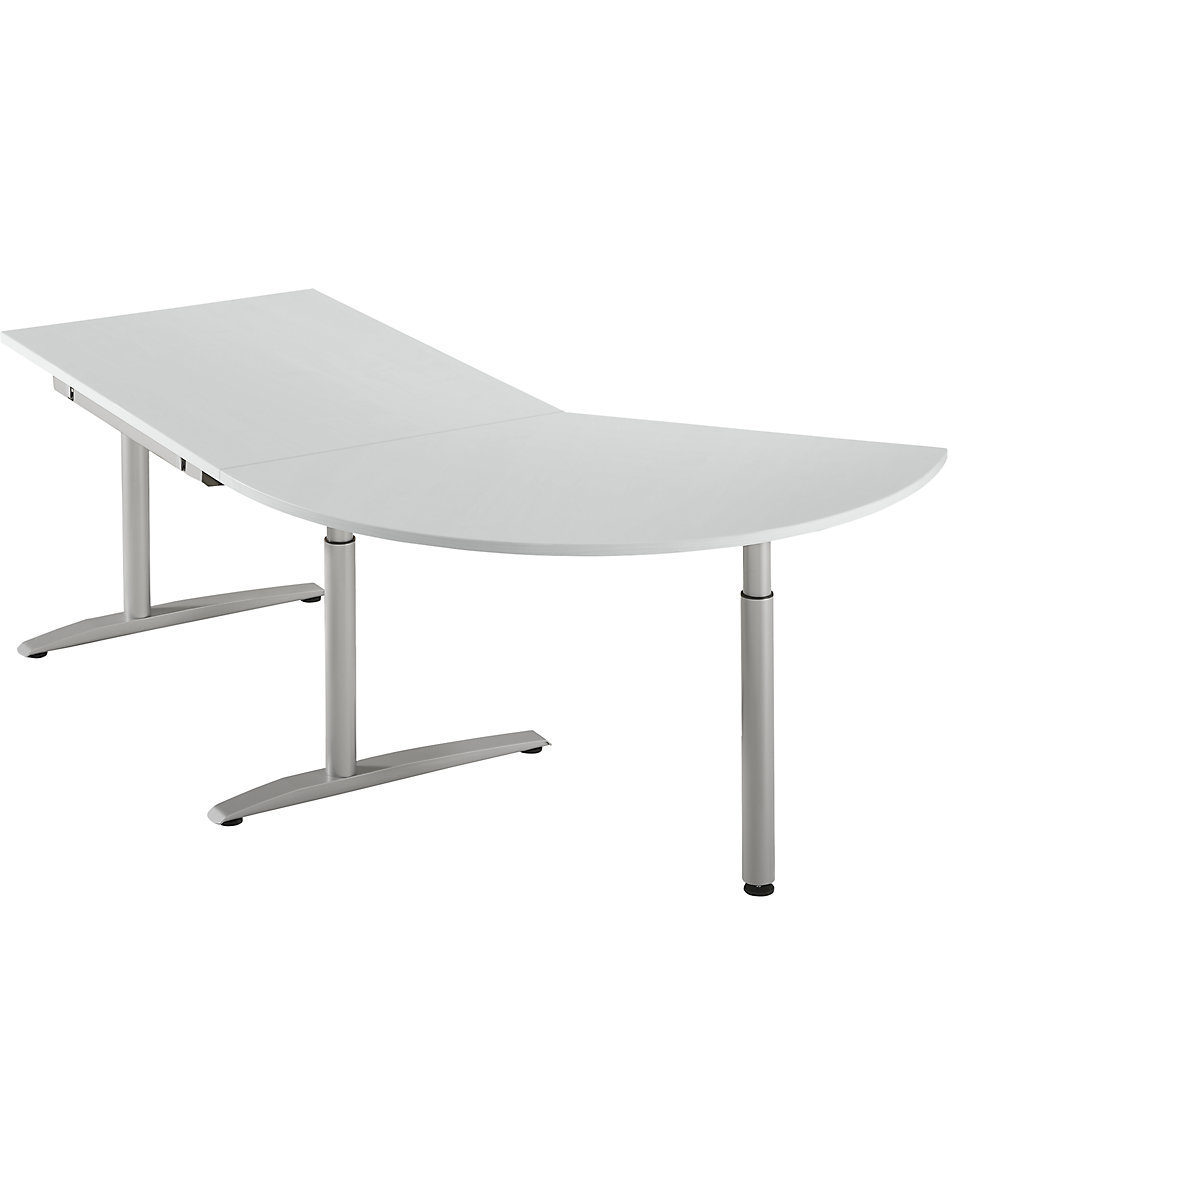 Priključni stol, namještanje visine 650 – 850 mm HANNA, 3/8 kruga, s potpornom nogom, u svijetlosivoj boji-6